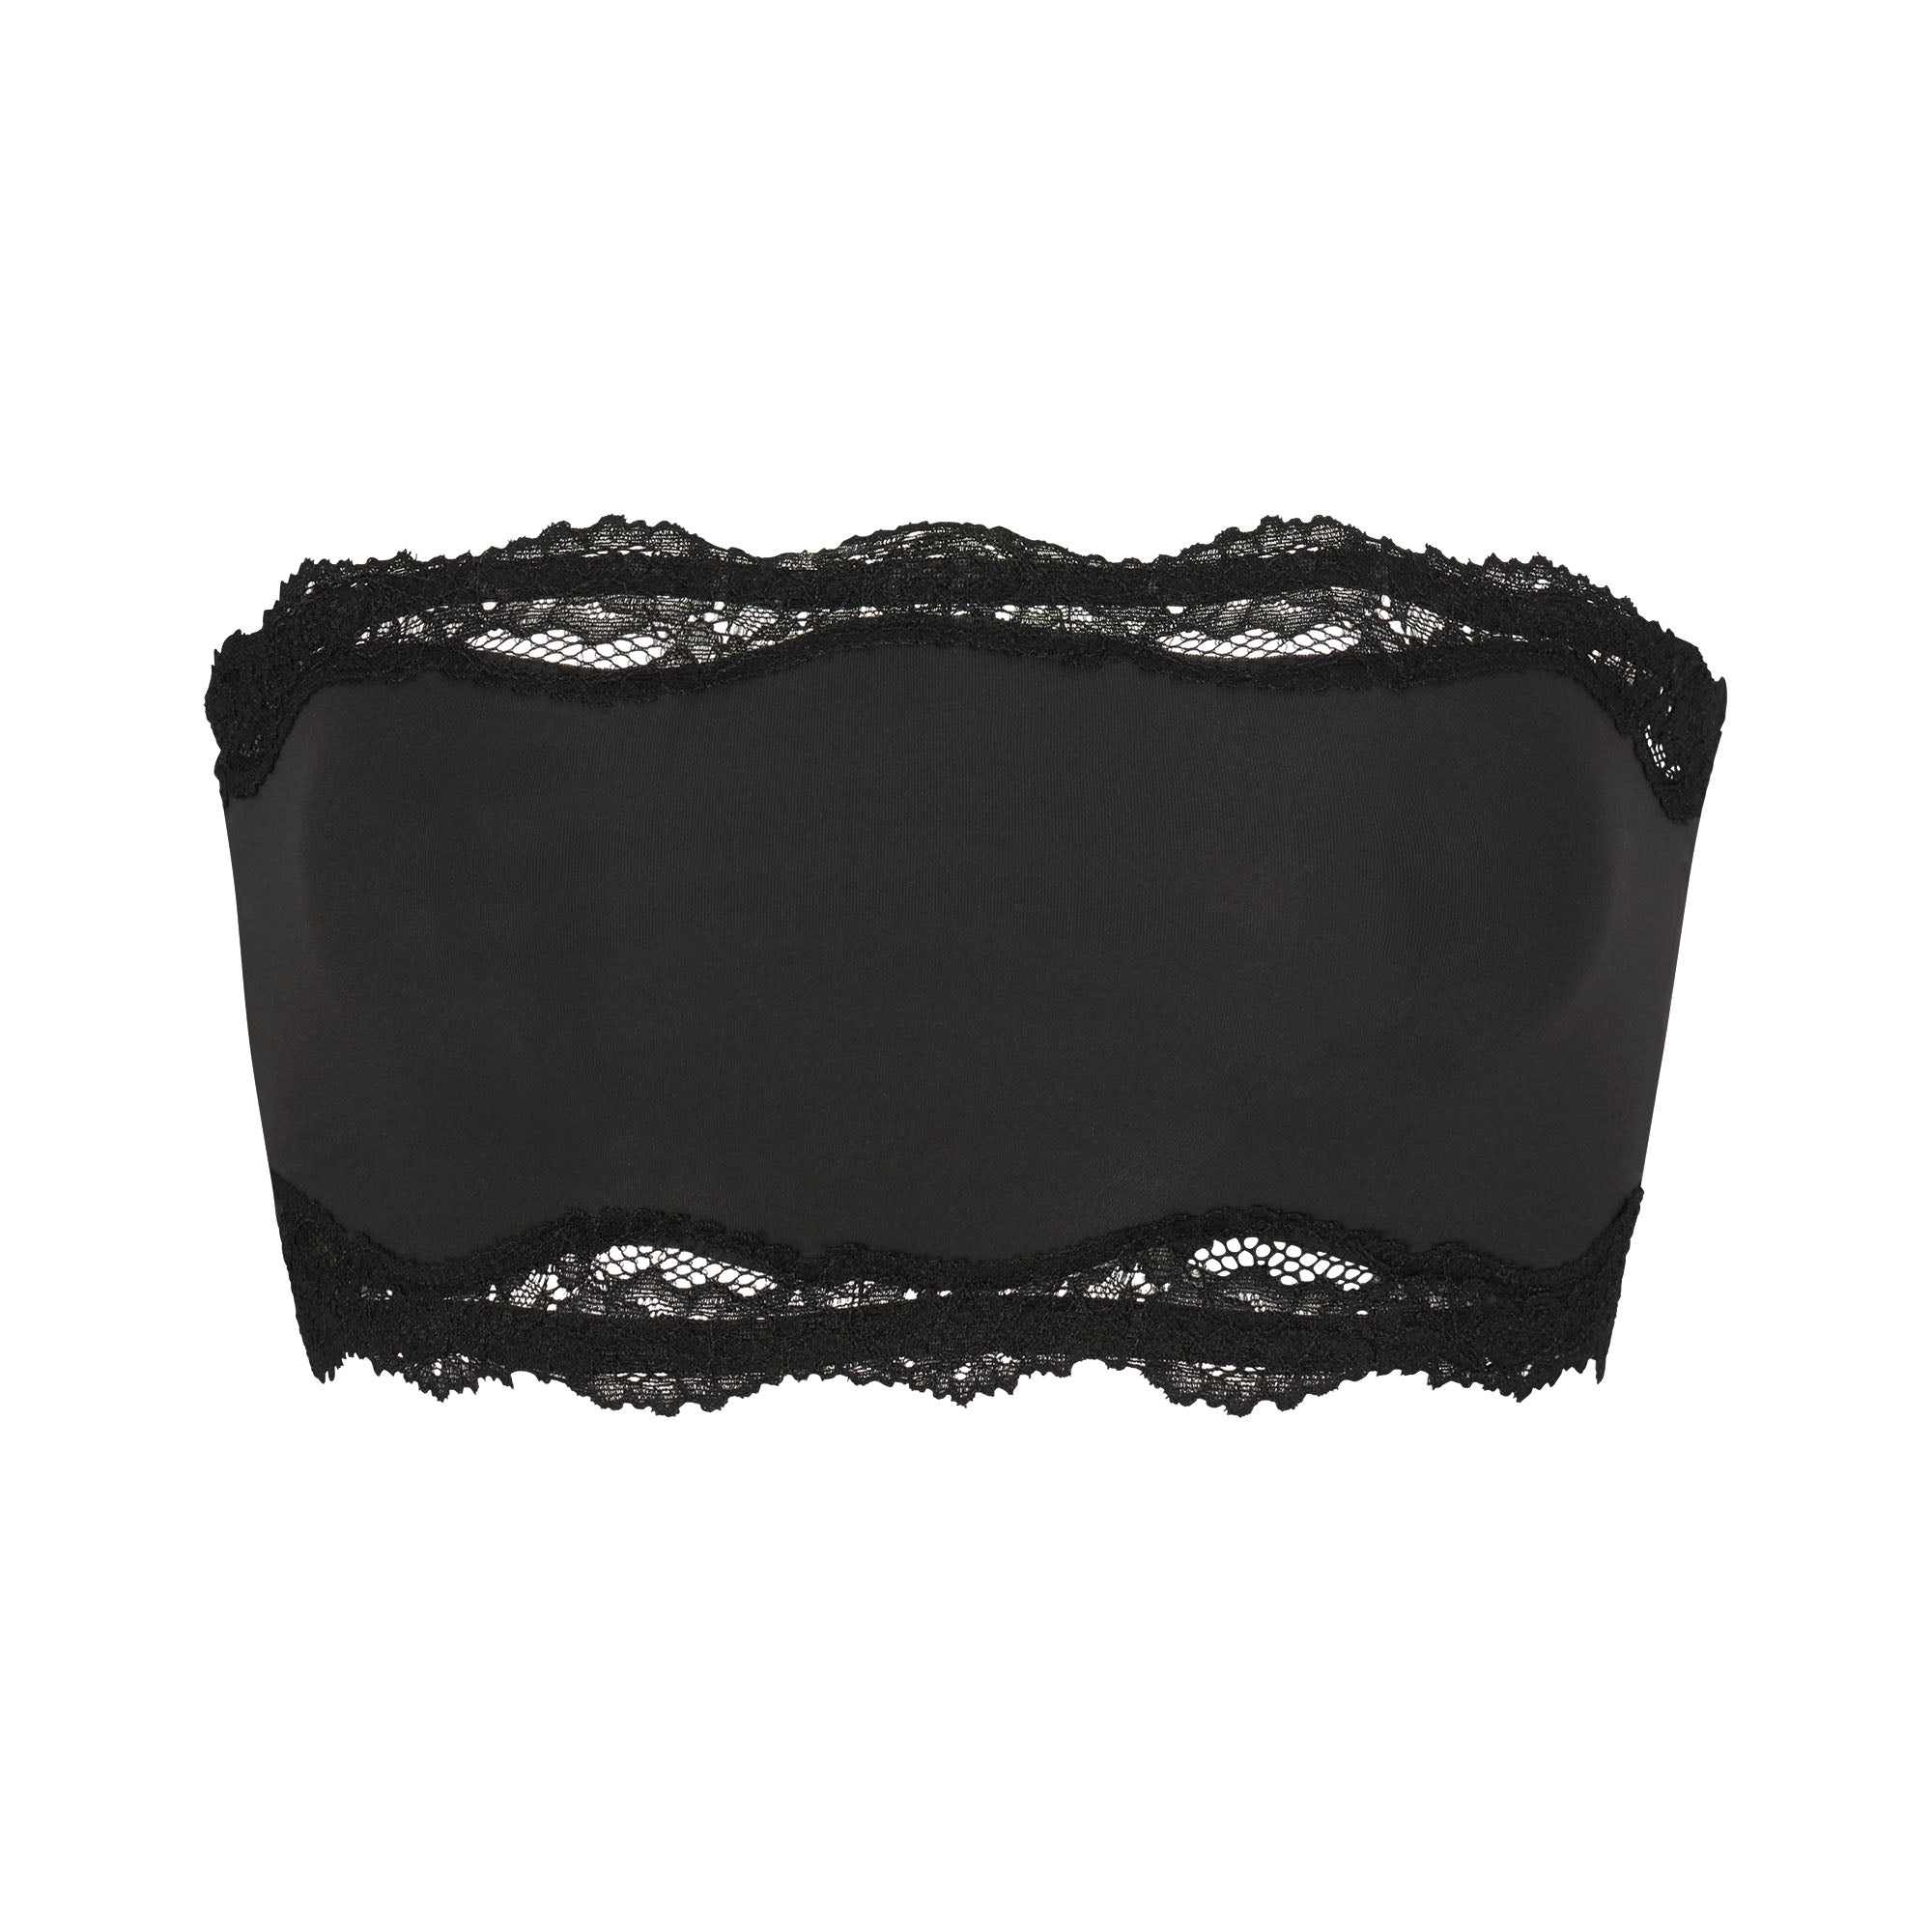 Black lace bandeau top